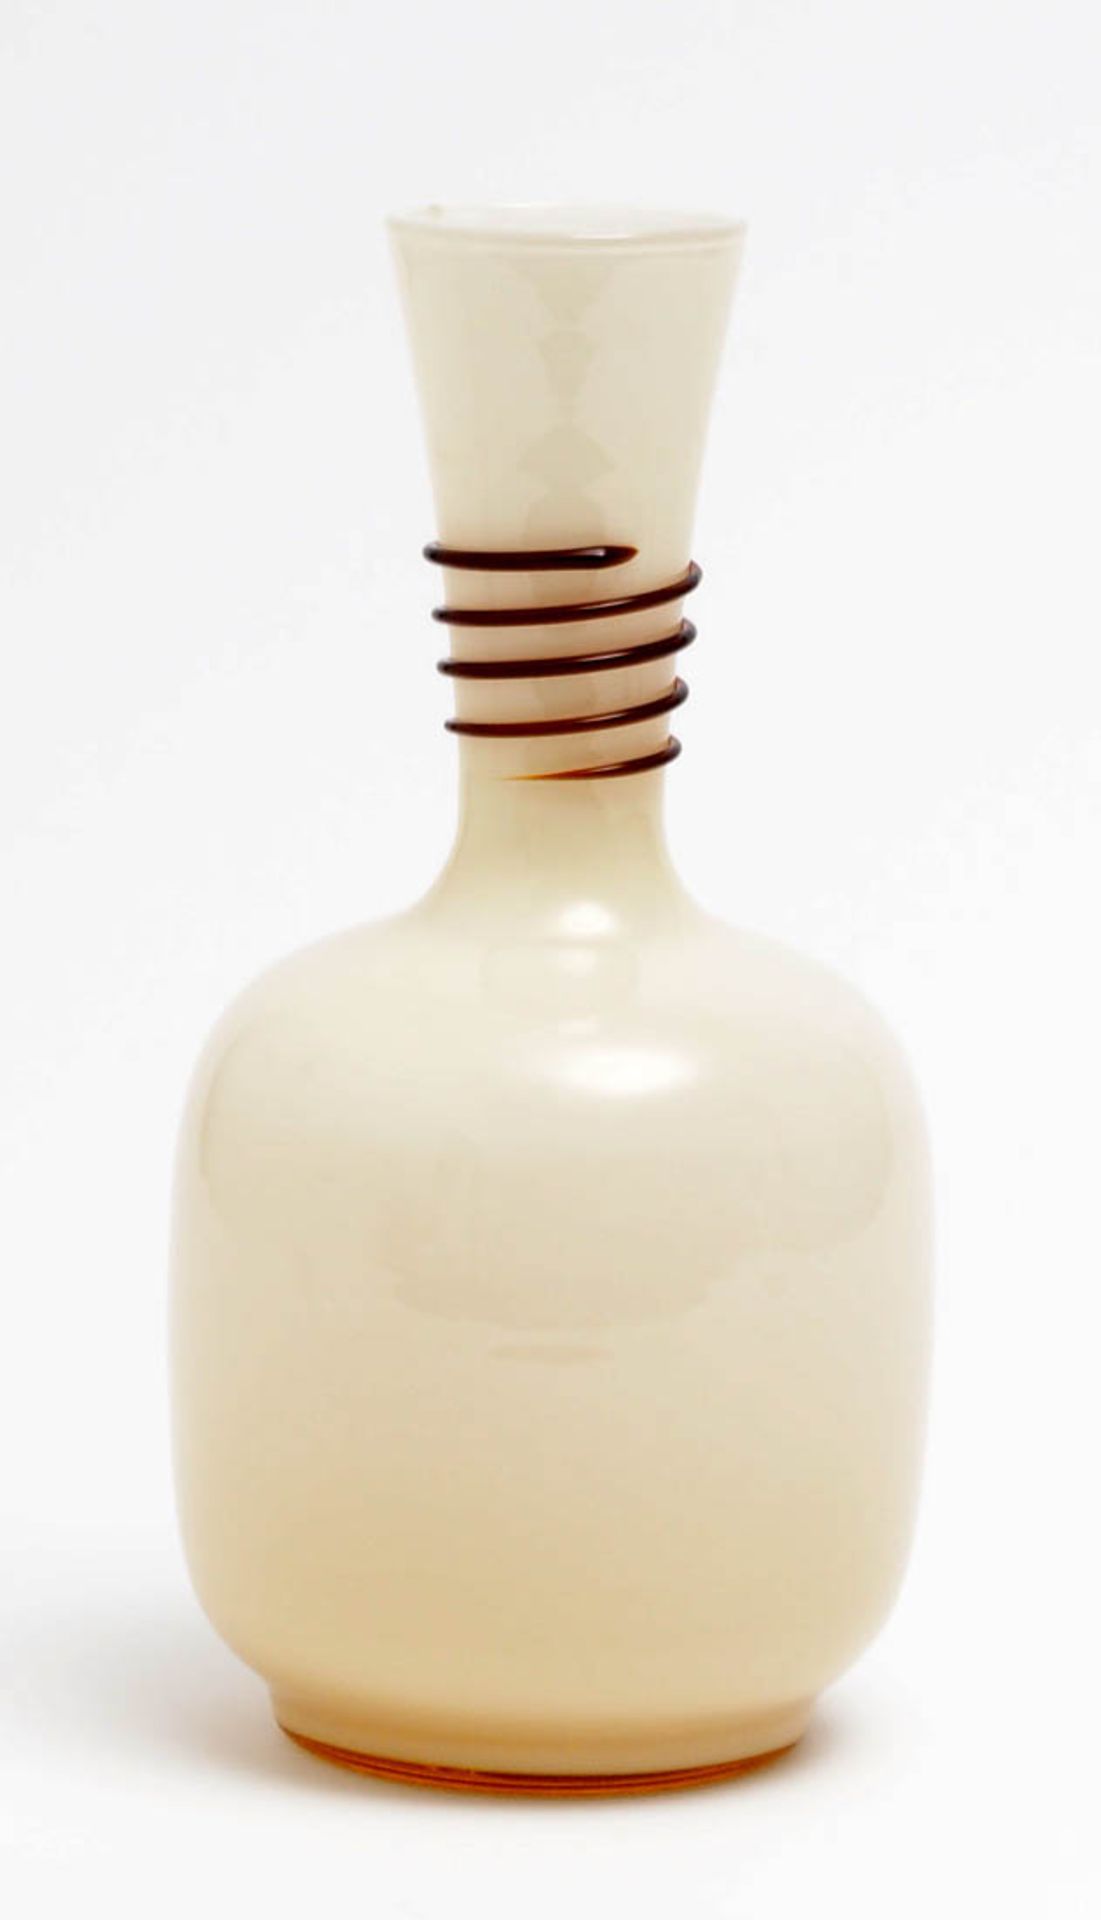 Vase, Murano Bauchiger Korpus mit konischem Röhrenhals. Farbloses Glas mit weißem, opakem